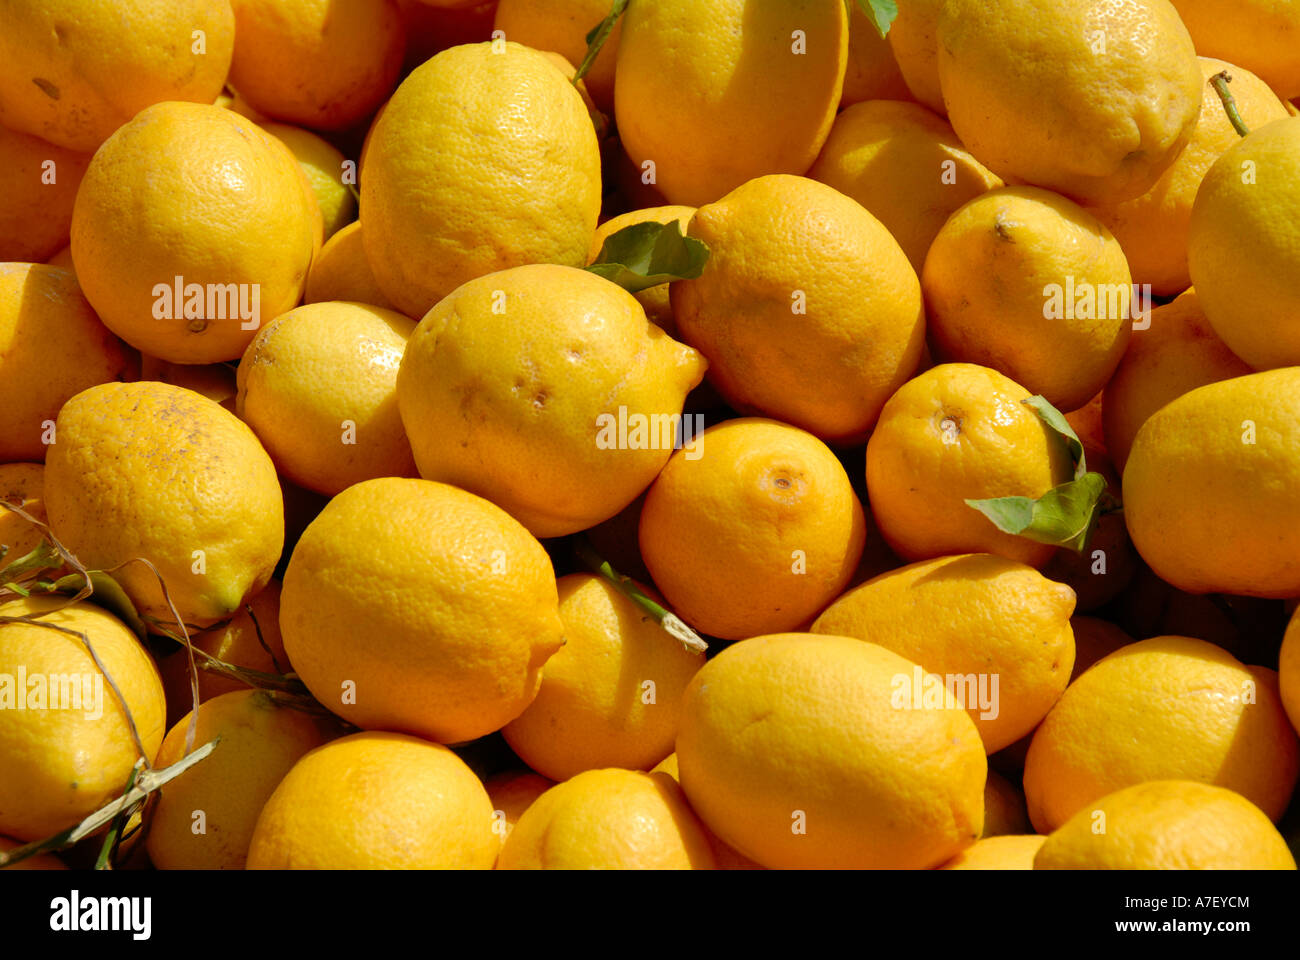 Citrons jaunes à un marché Casablanca Maroc Banque D'Images